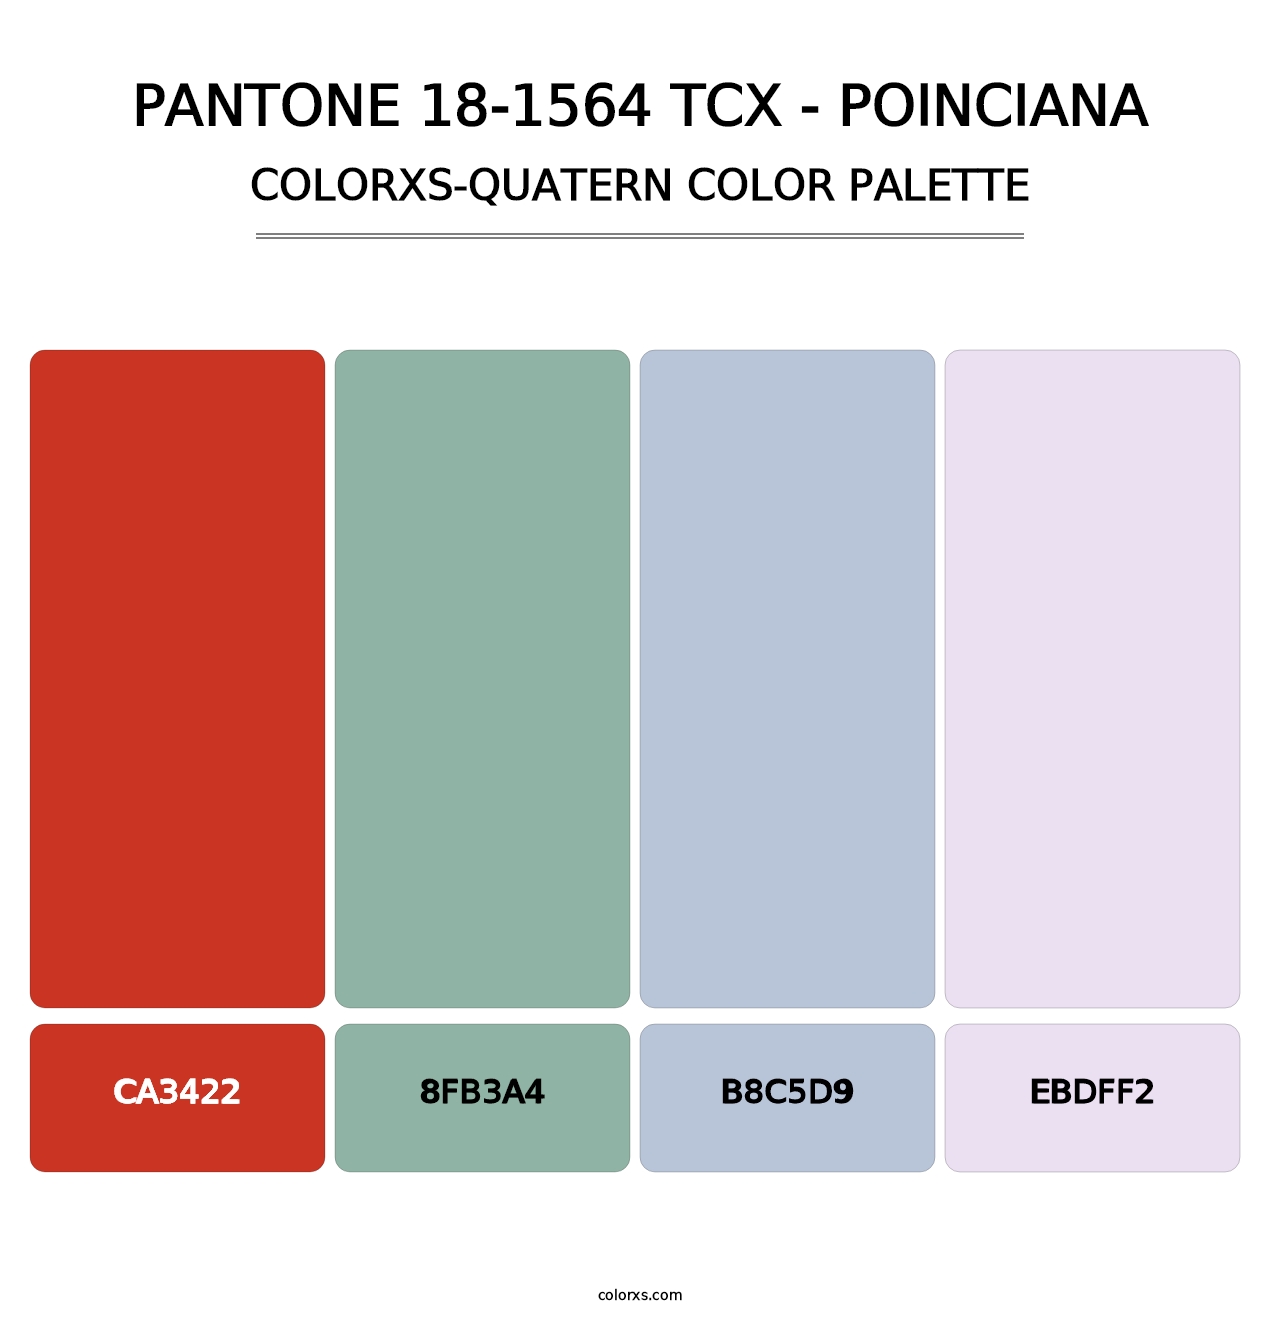 PANTONE 18-1564 TCX - Poinciana - Colorxs Quatern Palette